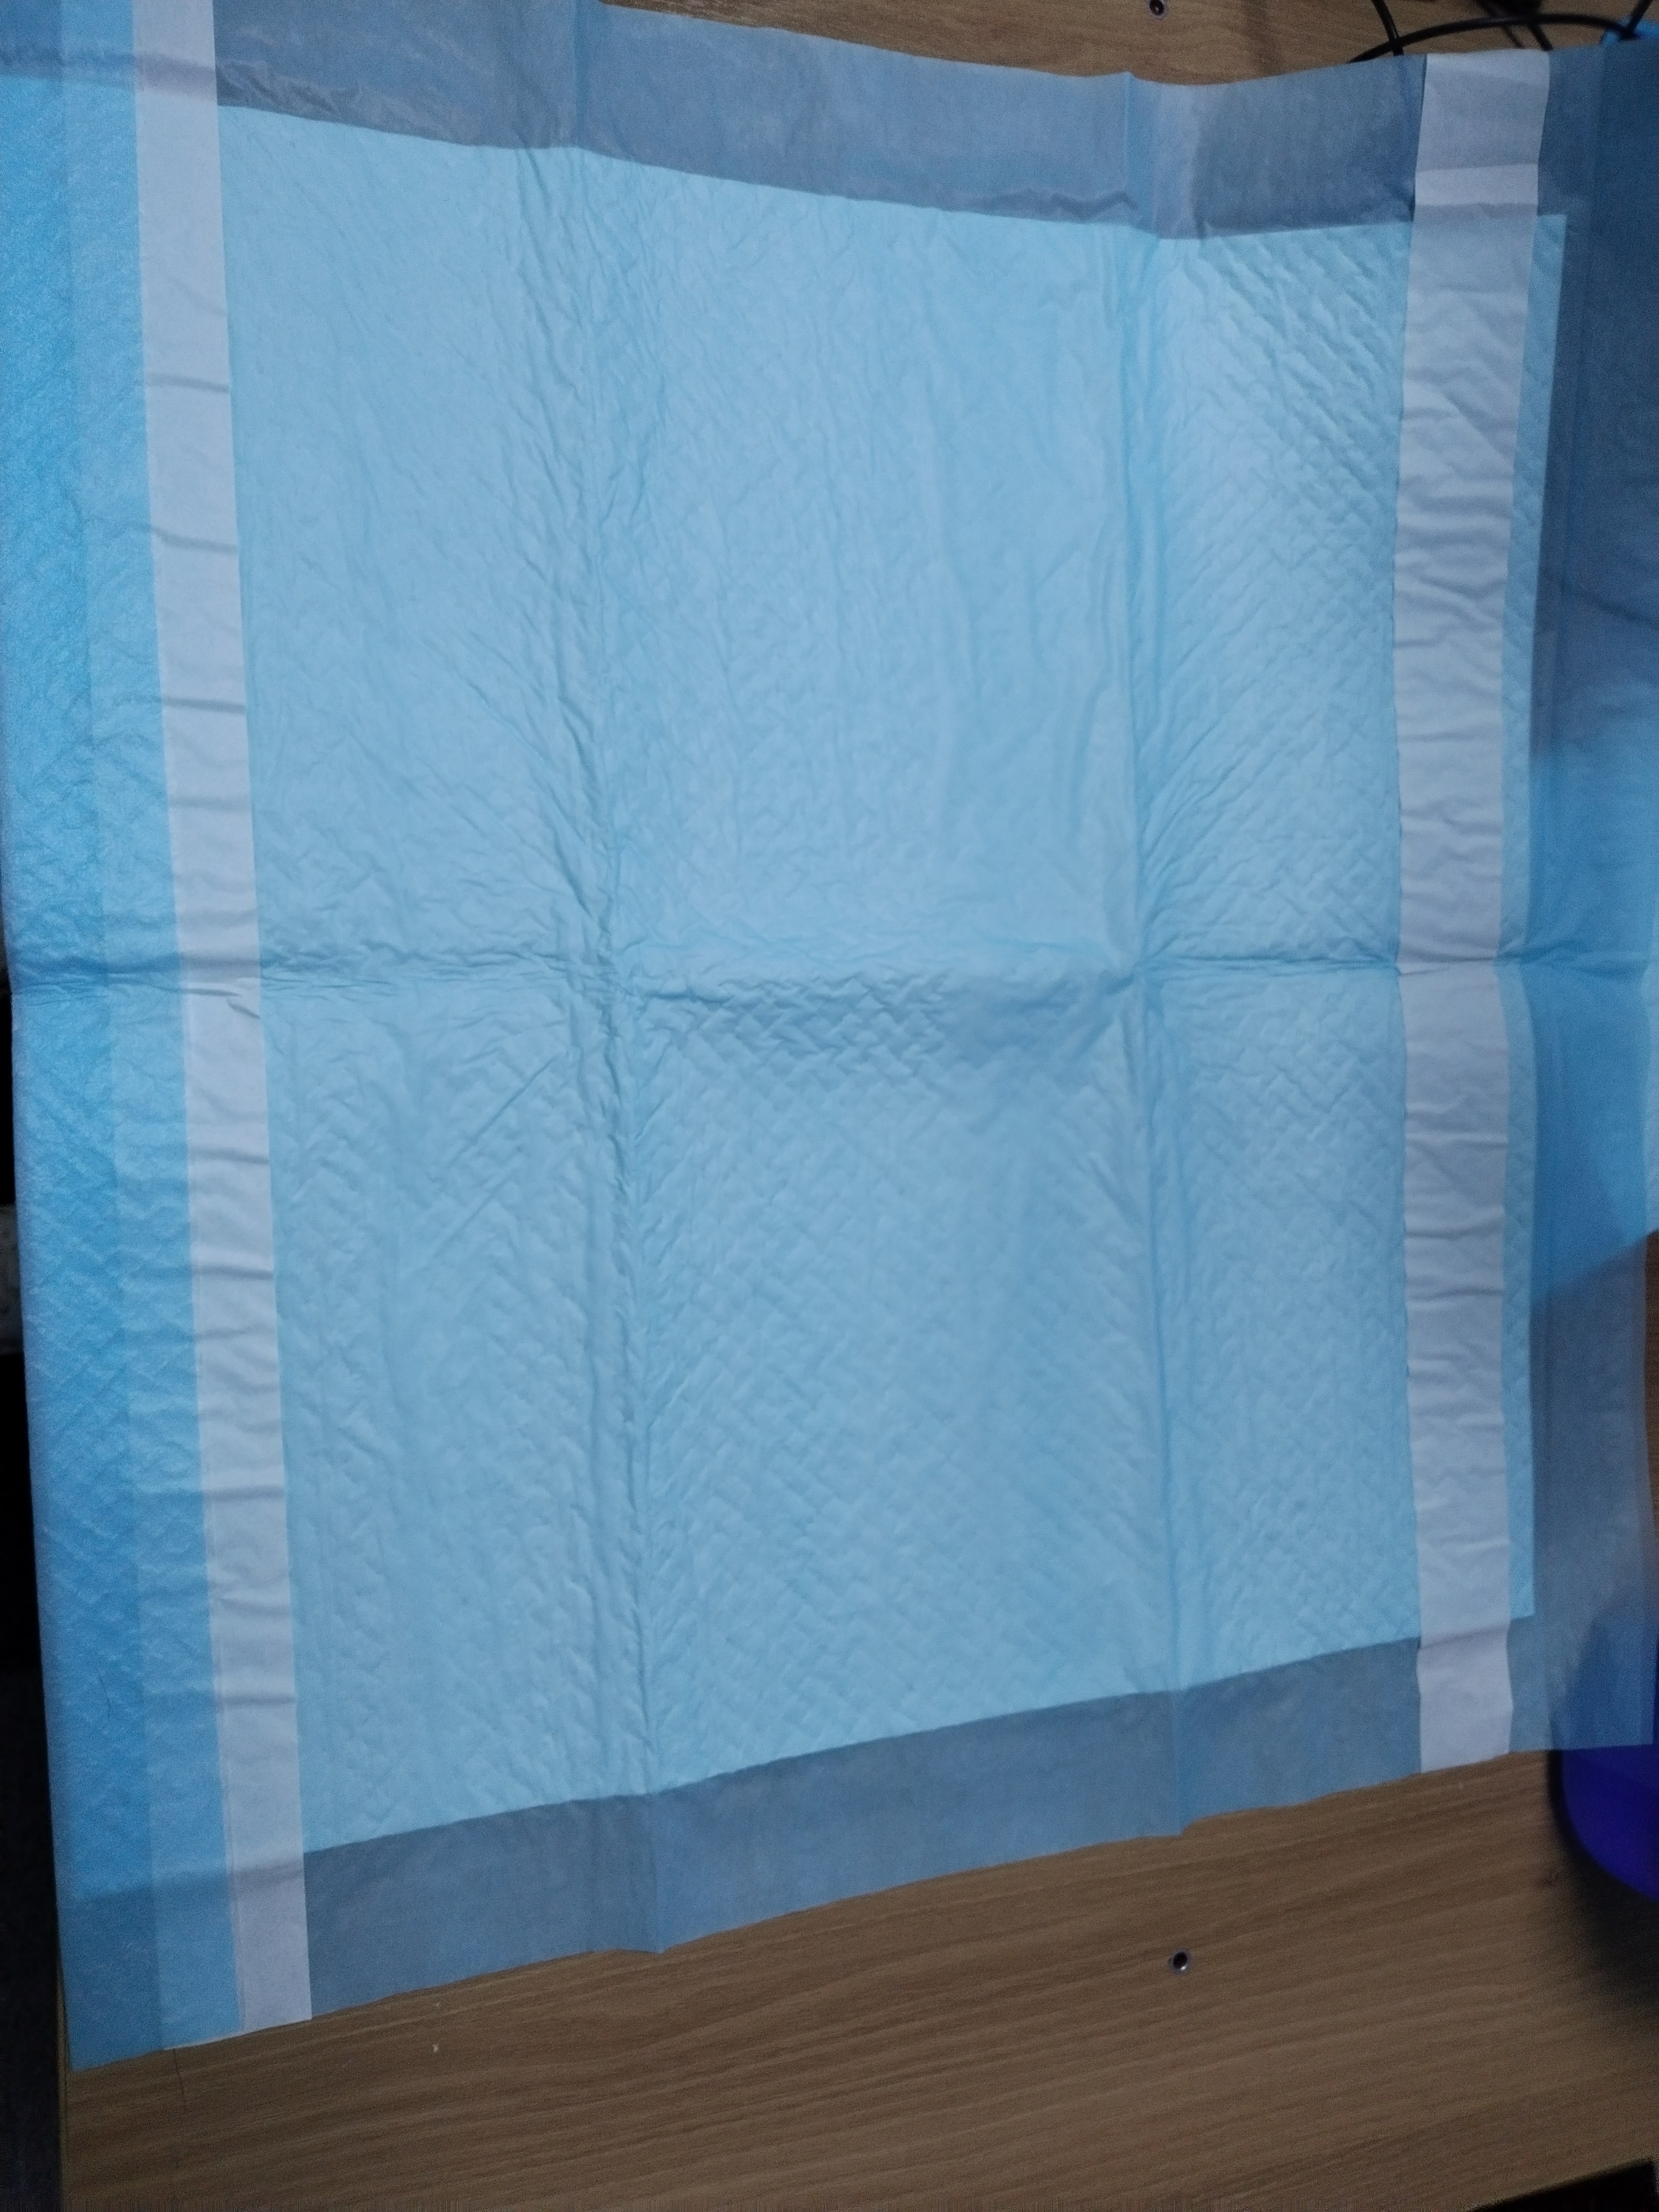 Underpad karo 2 strip adhesive dawa bed pad medis sekali pakai karo super absorbency inkontinensia pad sampel gratis